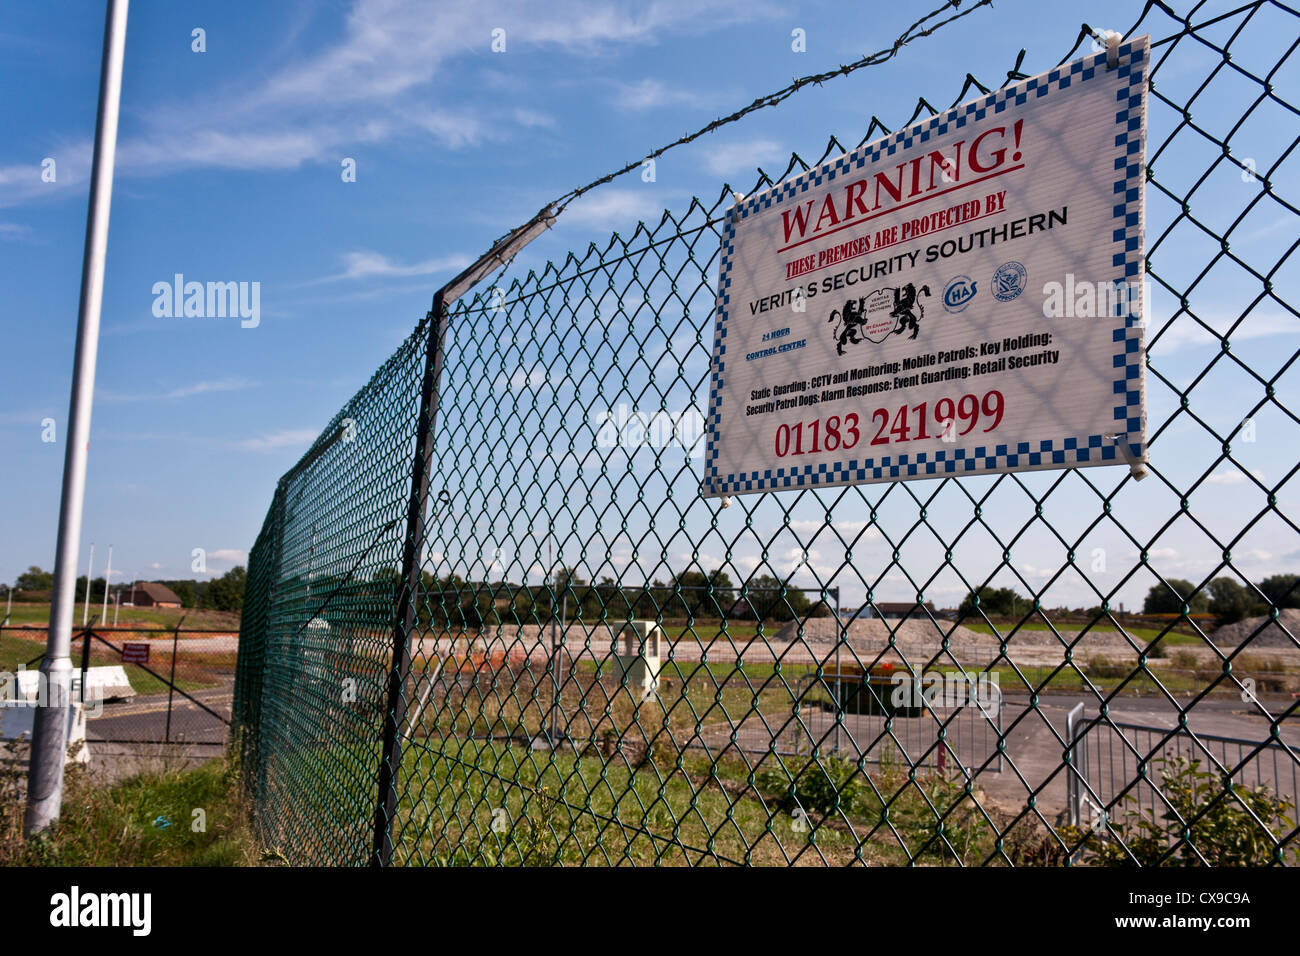 Un sito brownfield in attesa di sviluppo è recintata. Un avviso segnala al pubblico che il sito è protetto da una ditta di sicurezza. Foto Stock